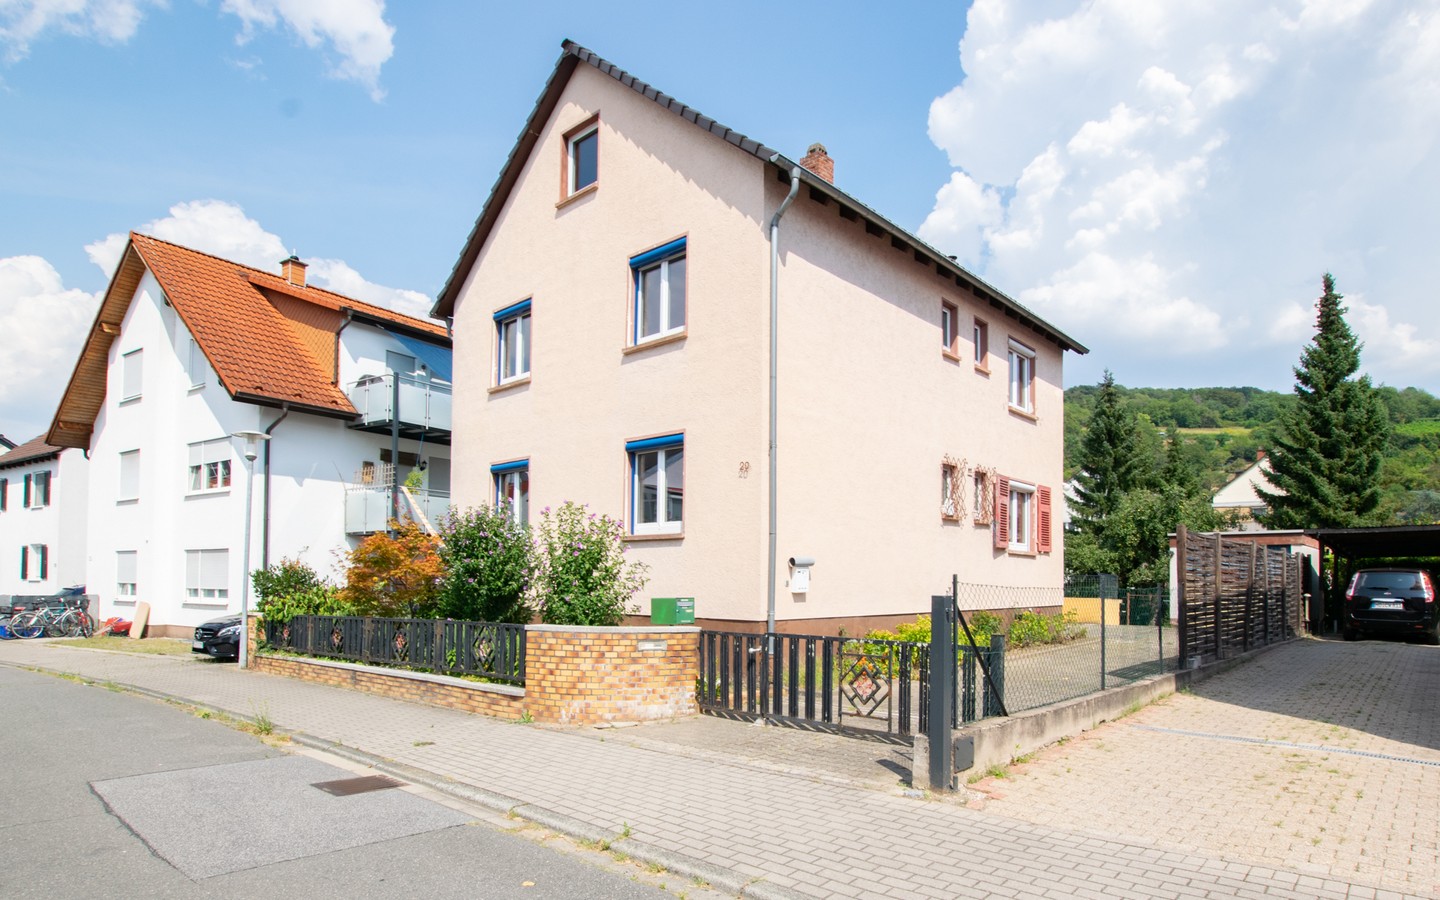 Hausansicht - Freistehendes Ein- bis Zweifamilienhaus mit Garten in ruhiger Lage von Hemsbach!